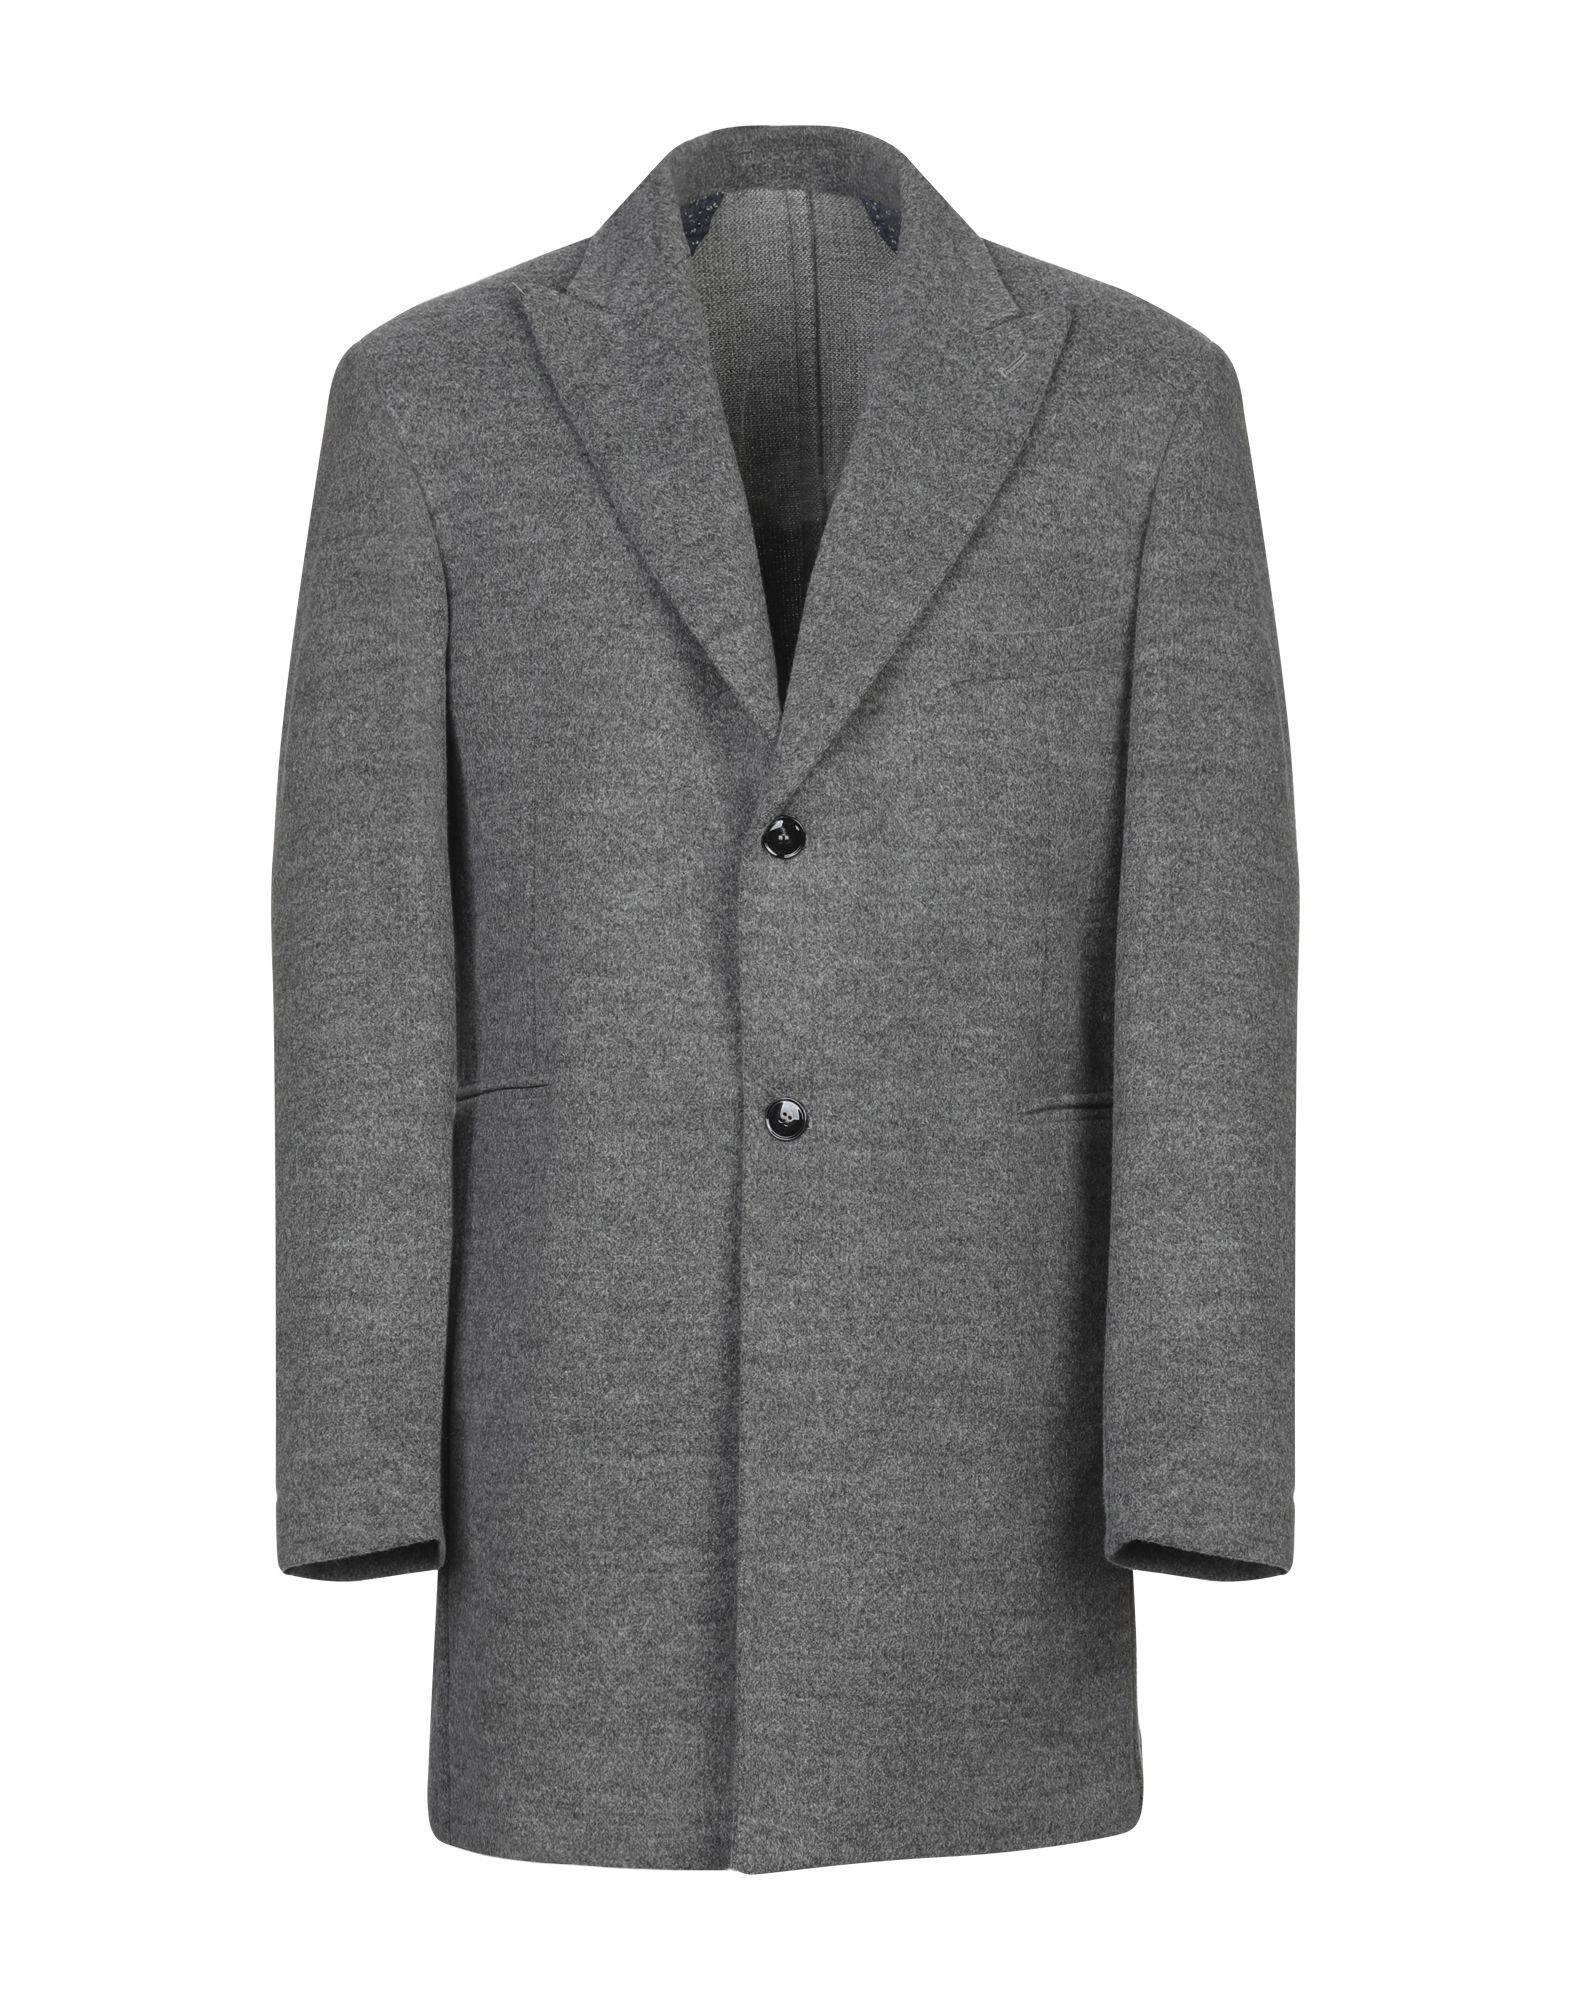 Emanuel Ungaro Coat in Grey (Gray) for Men - Lyst